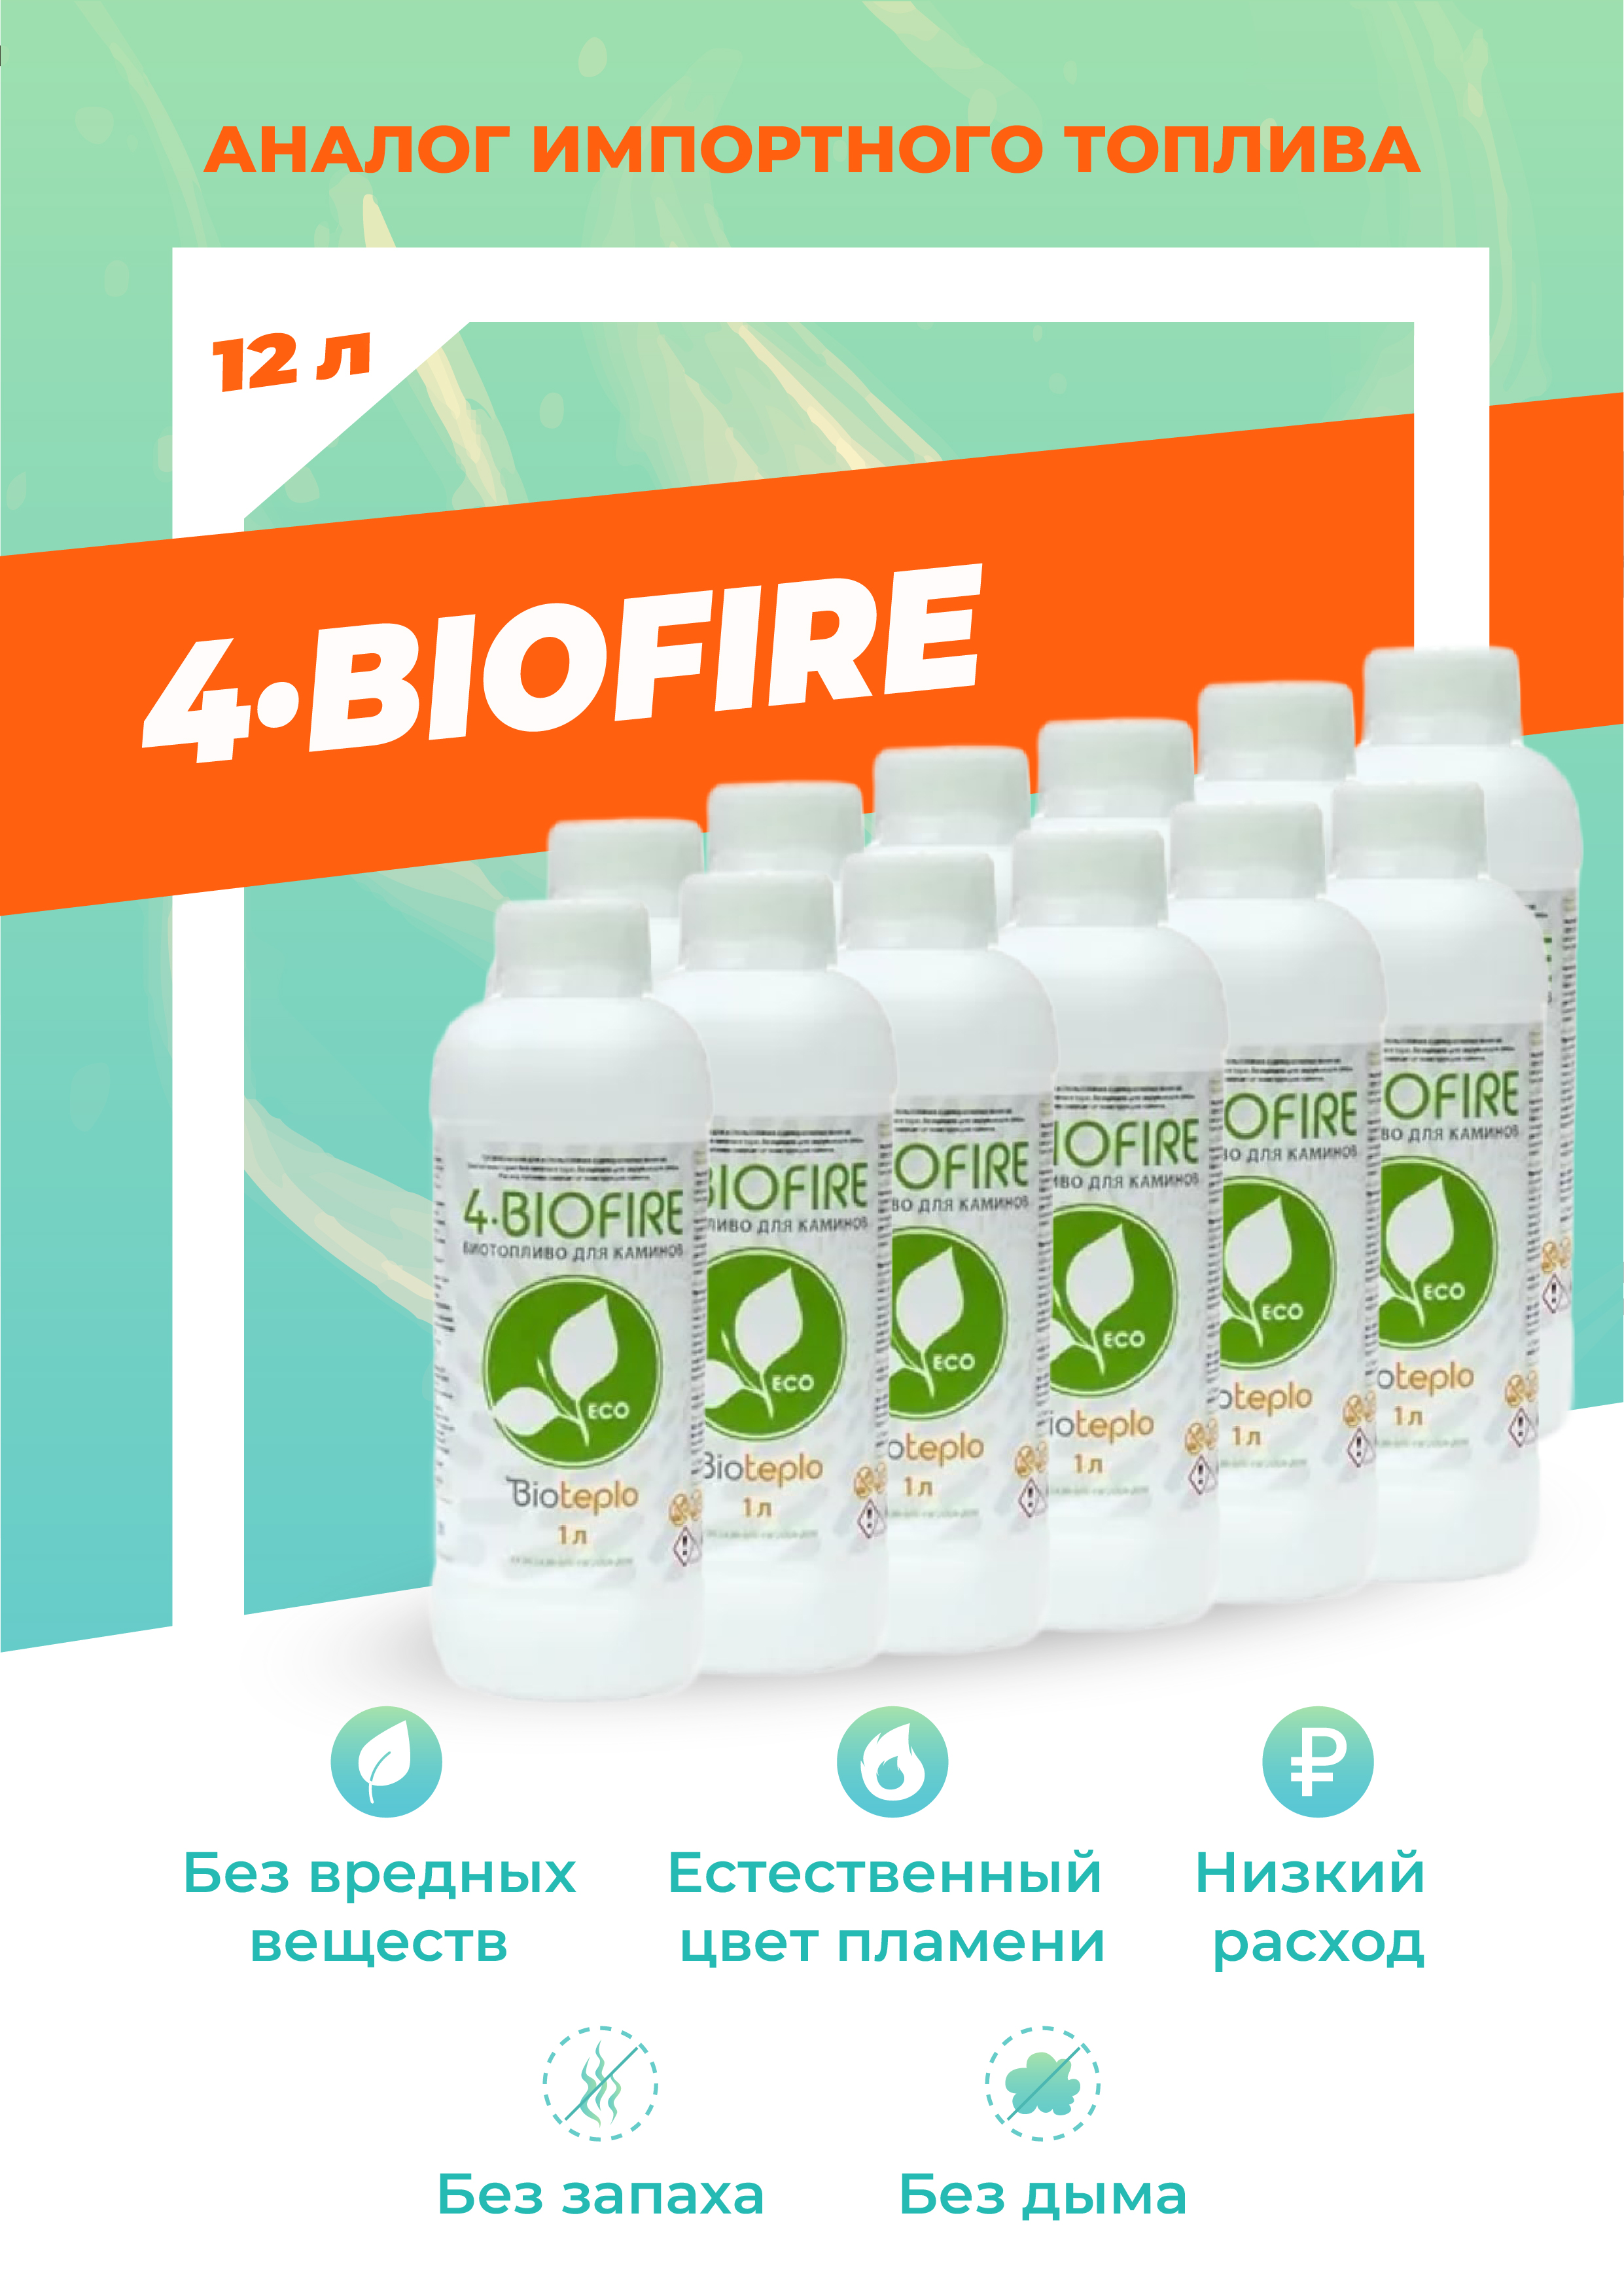 Биотопливо для биокаминов Bioteplo 4 Biofire 12 литр